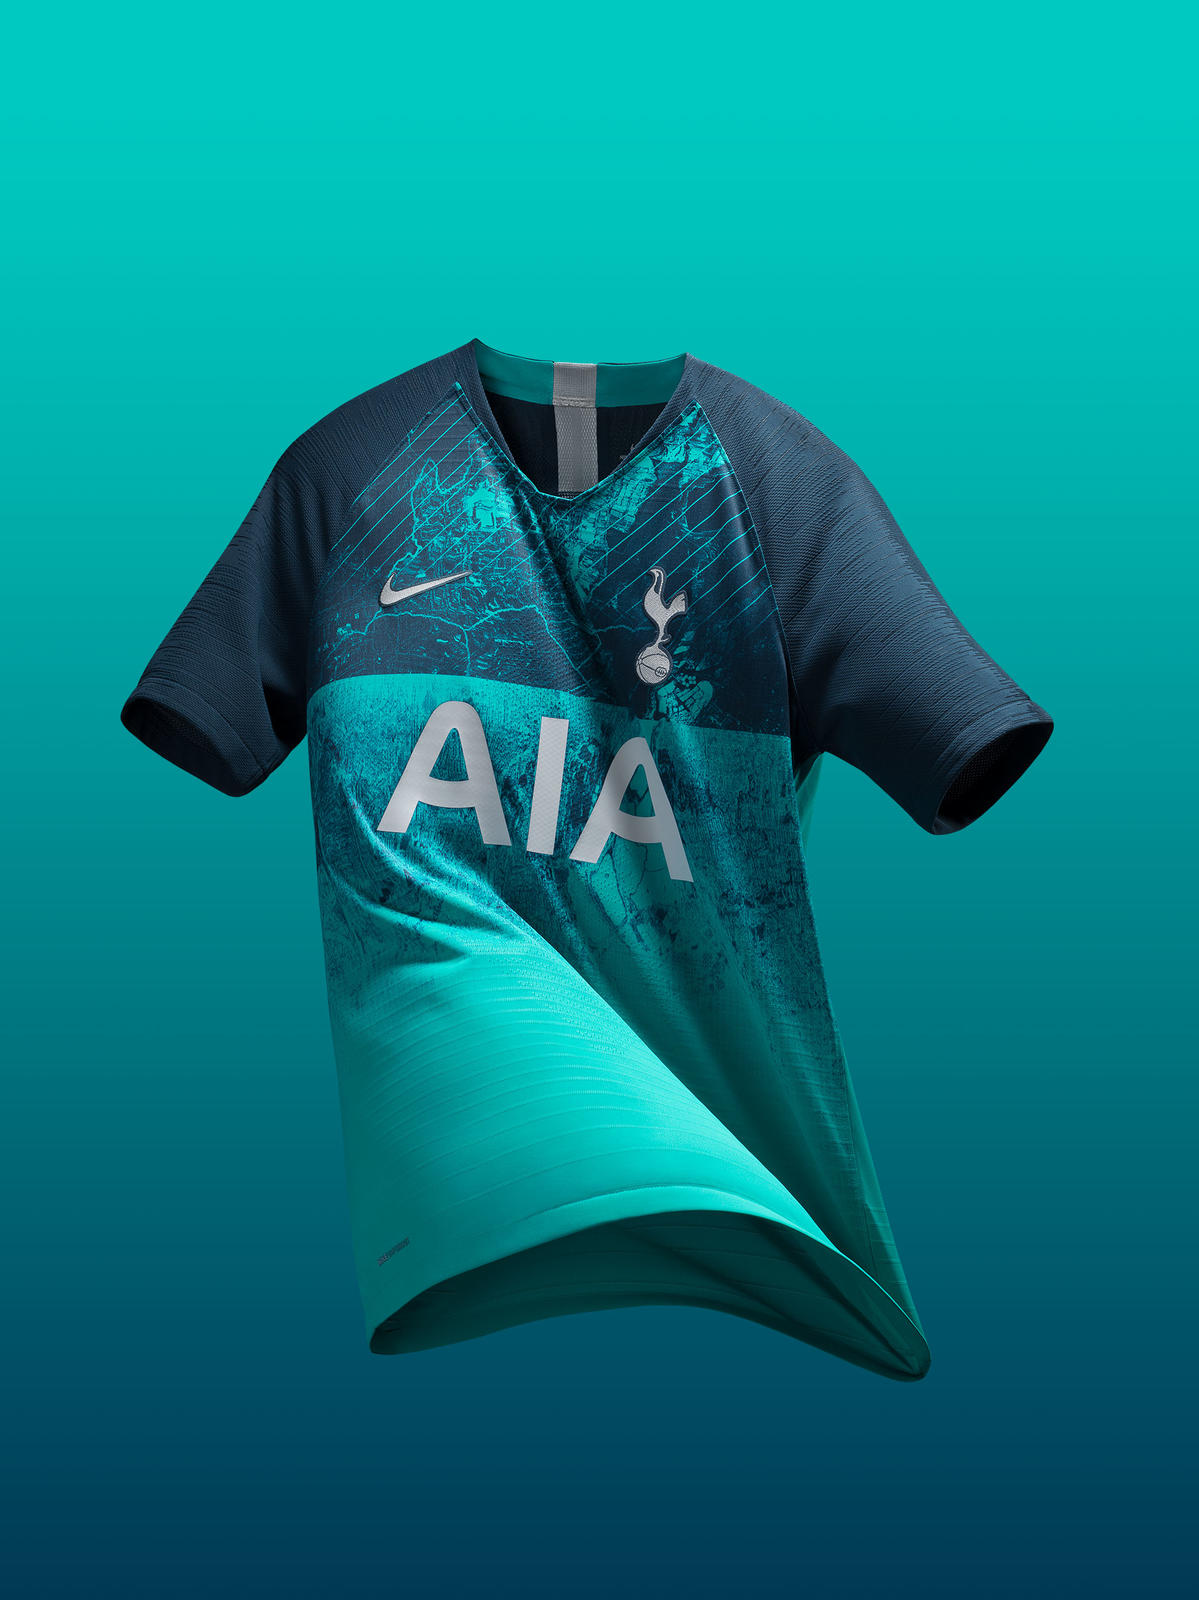 Introducing Spurs' 2022/23 Nike Third Kit! 